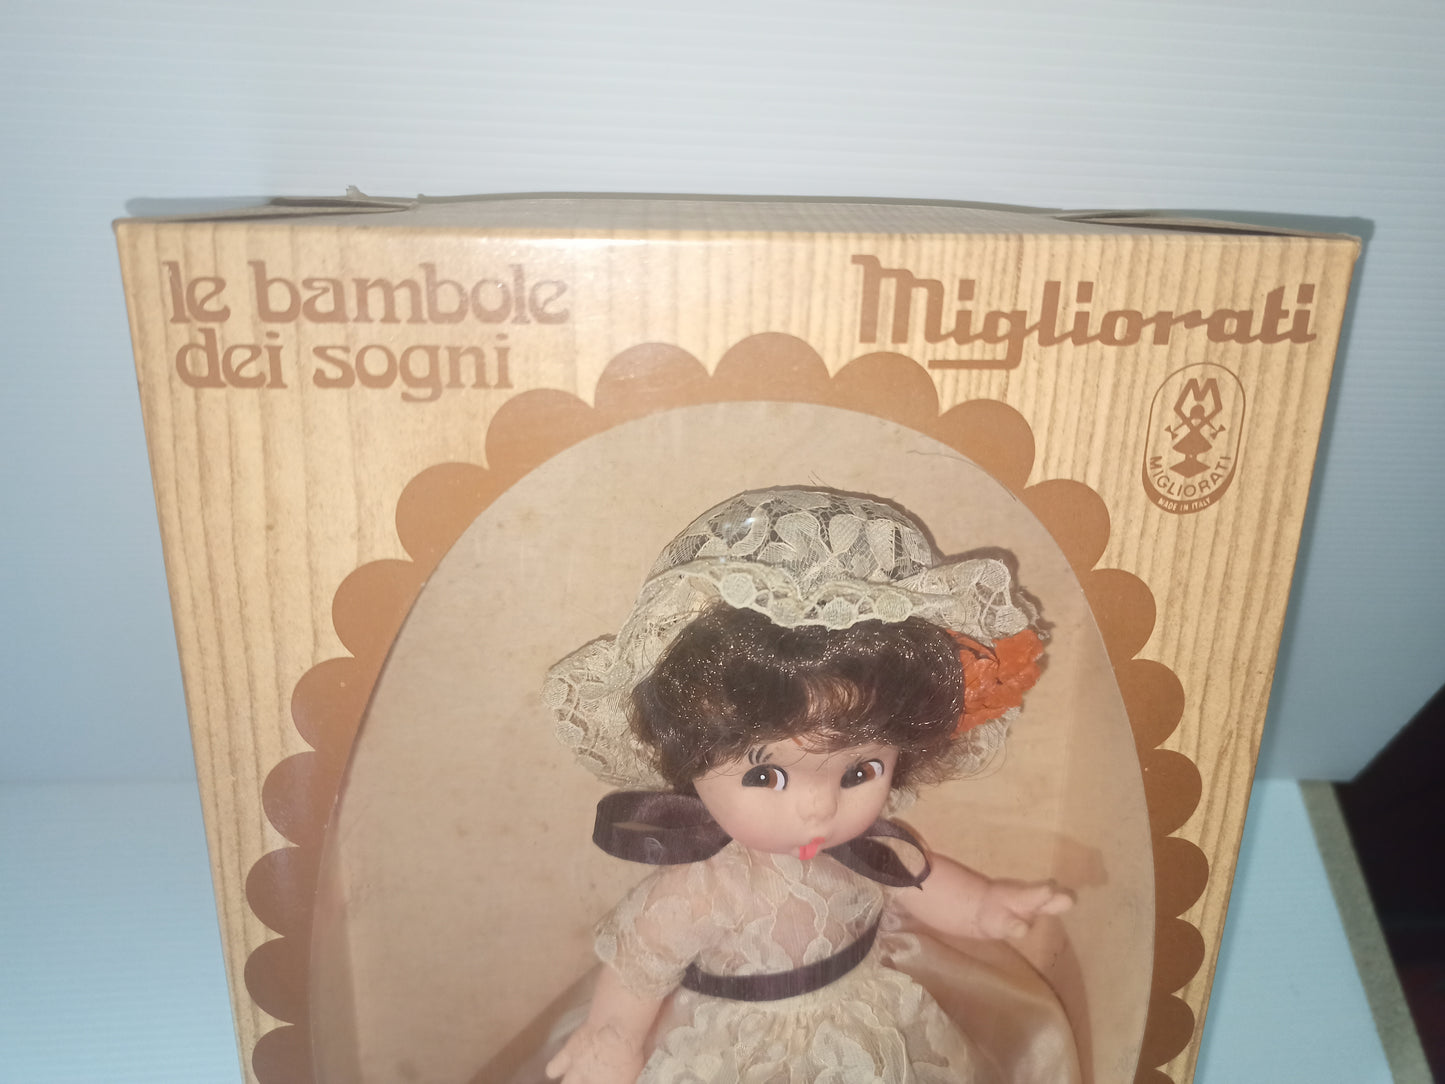 Bambola Migliorati Bambole Dei Sogni, anni 70